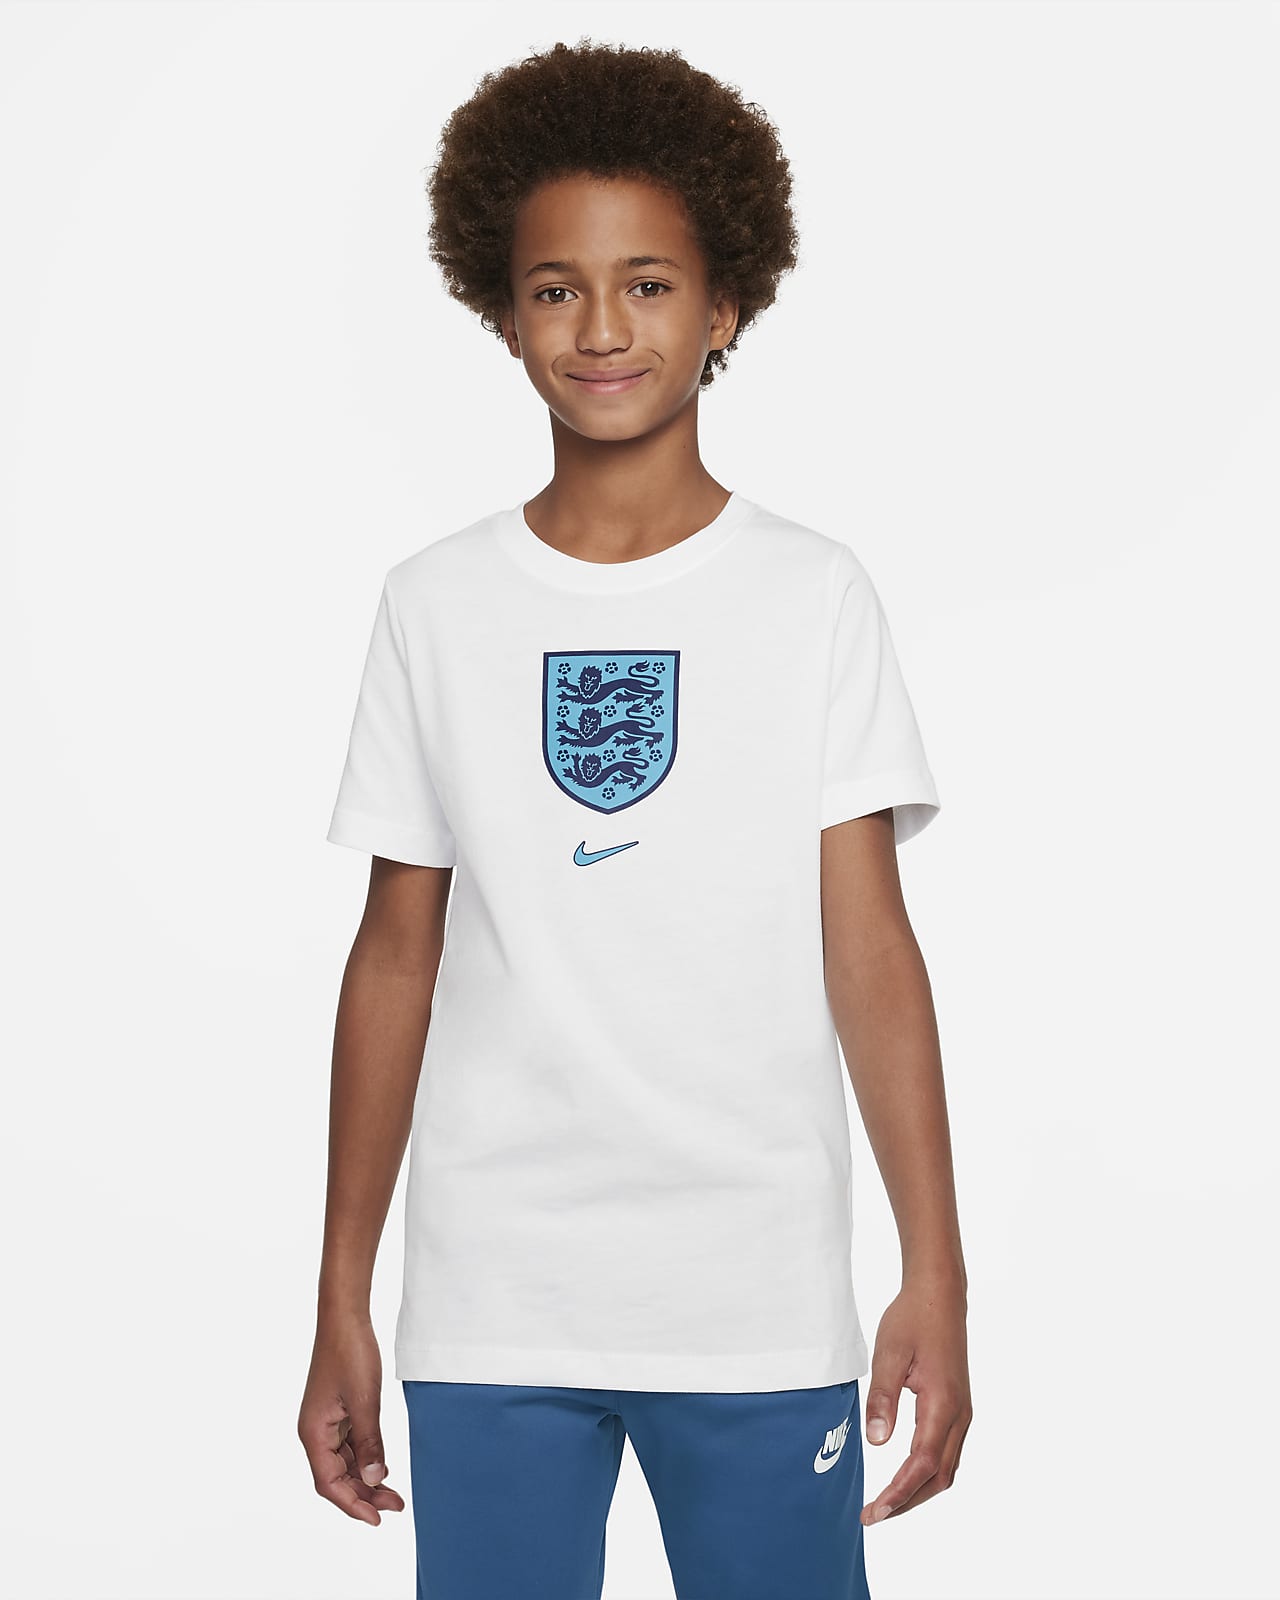 Engeland Nike T-shirt voor kids